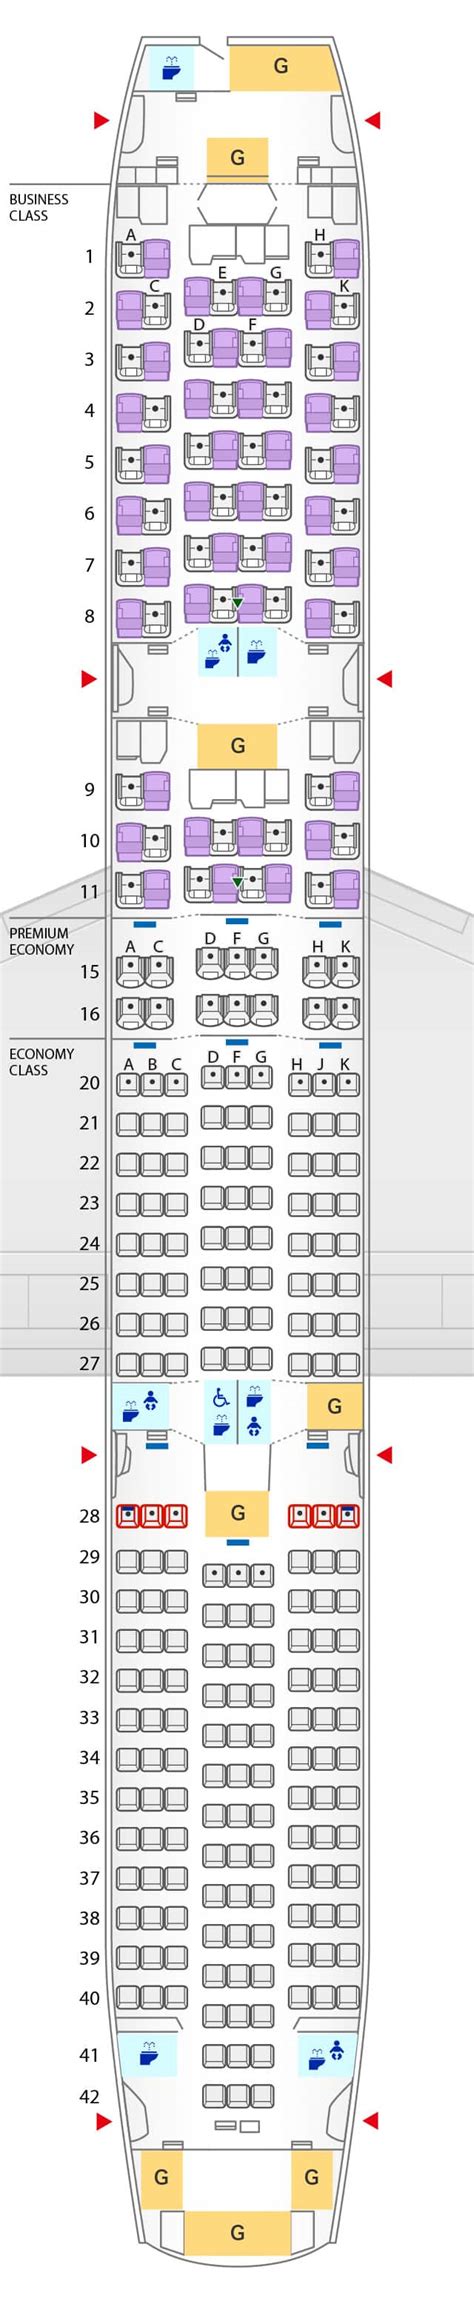 boeing 787 9 jet seating plan